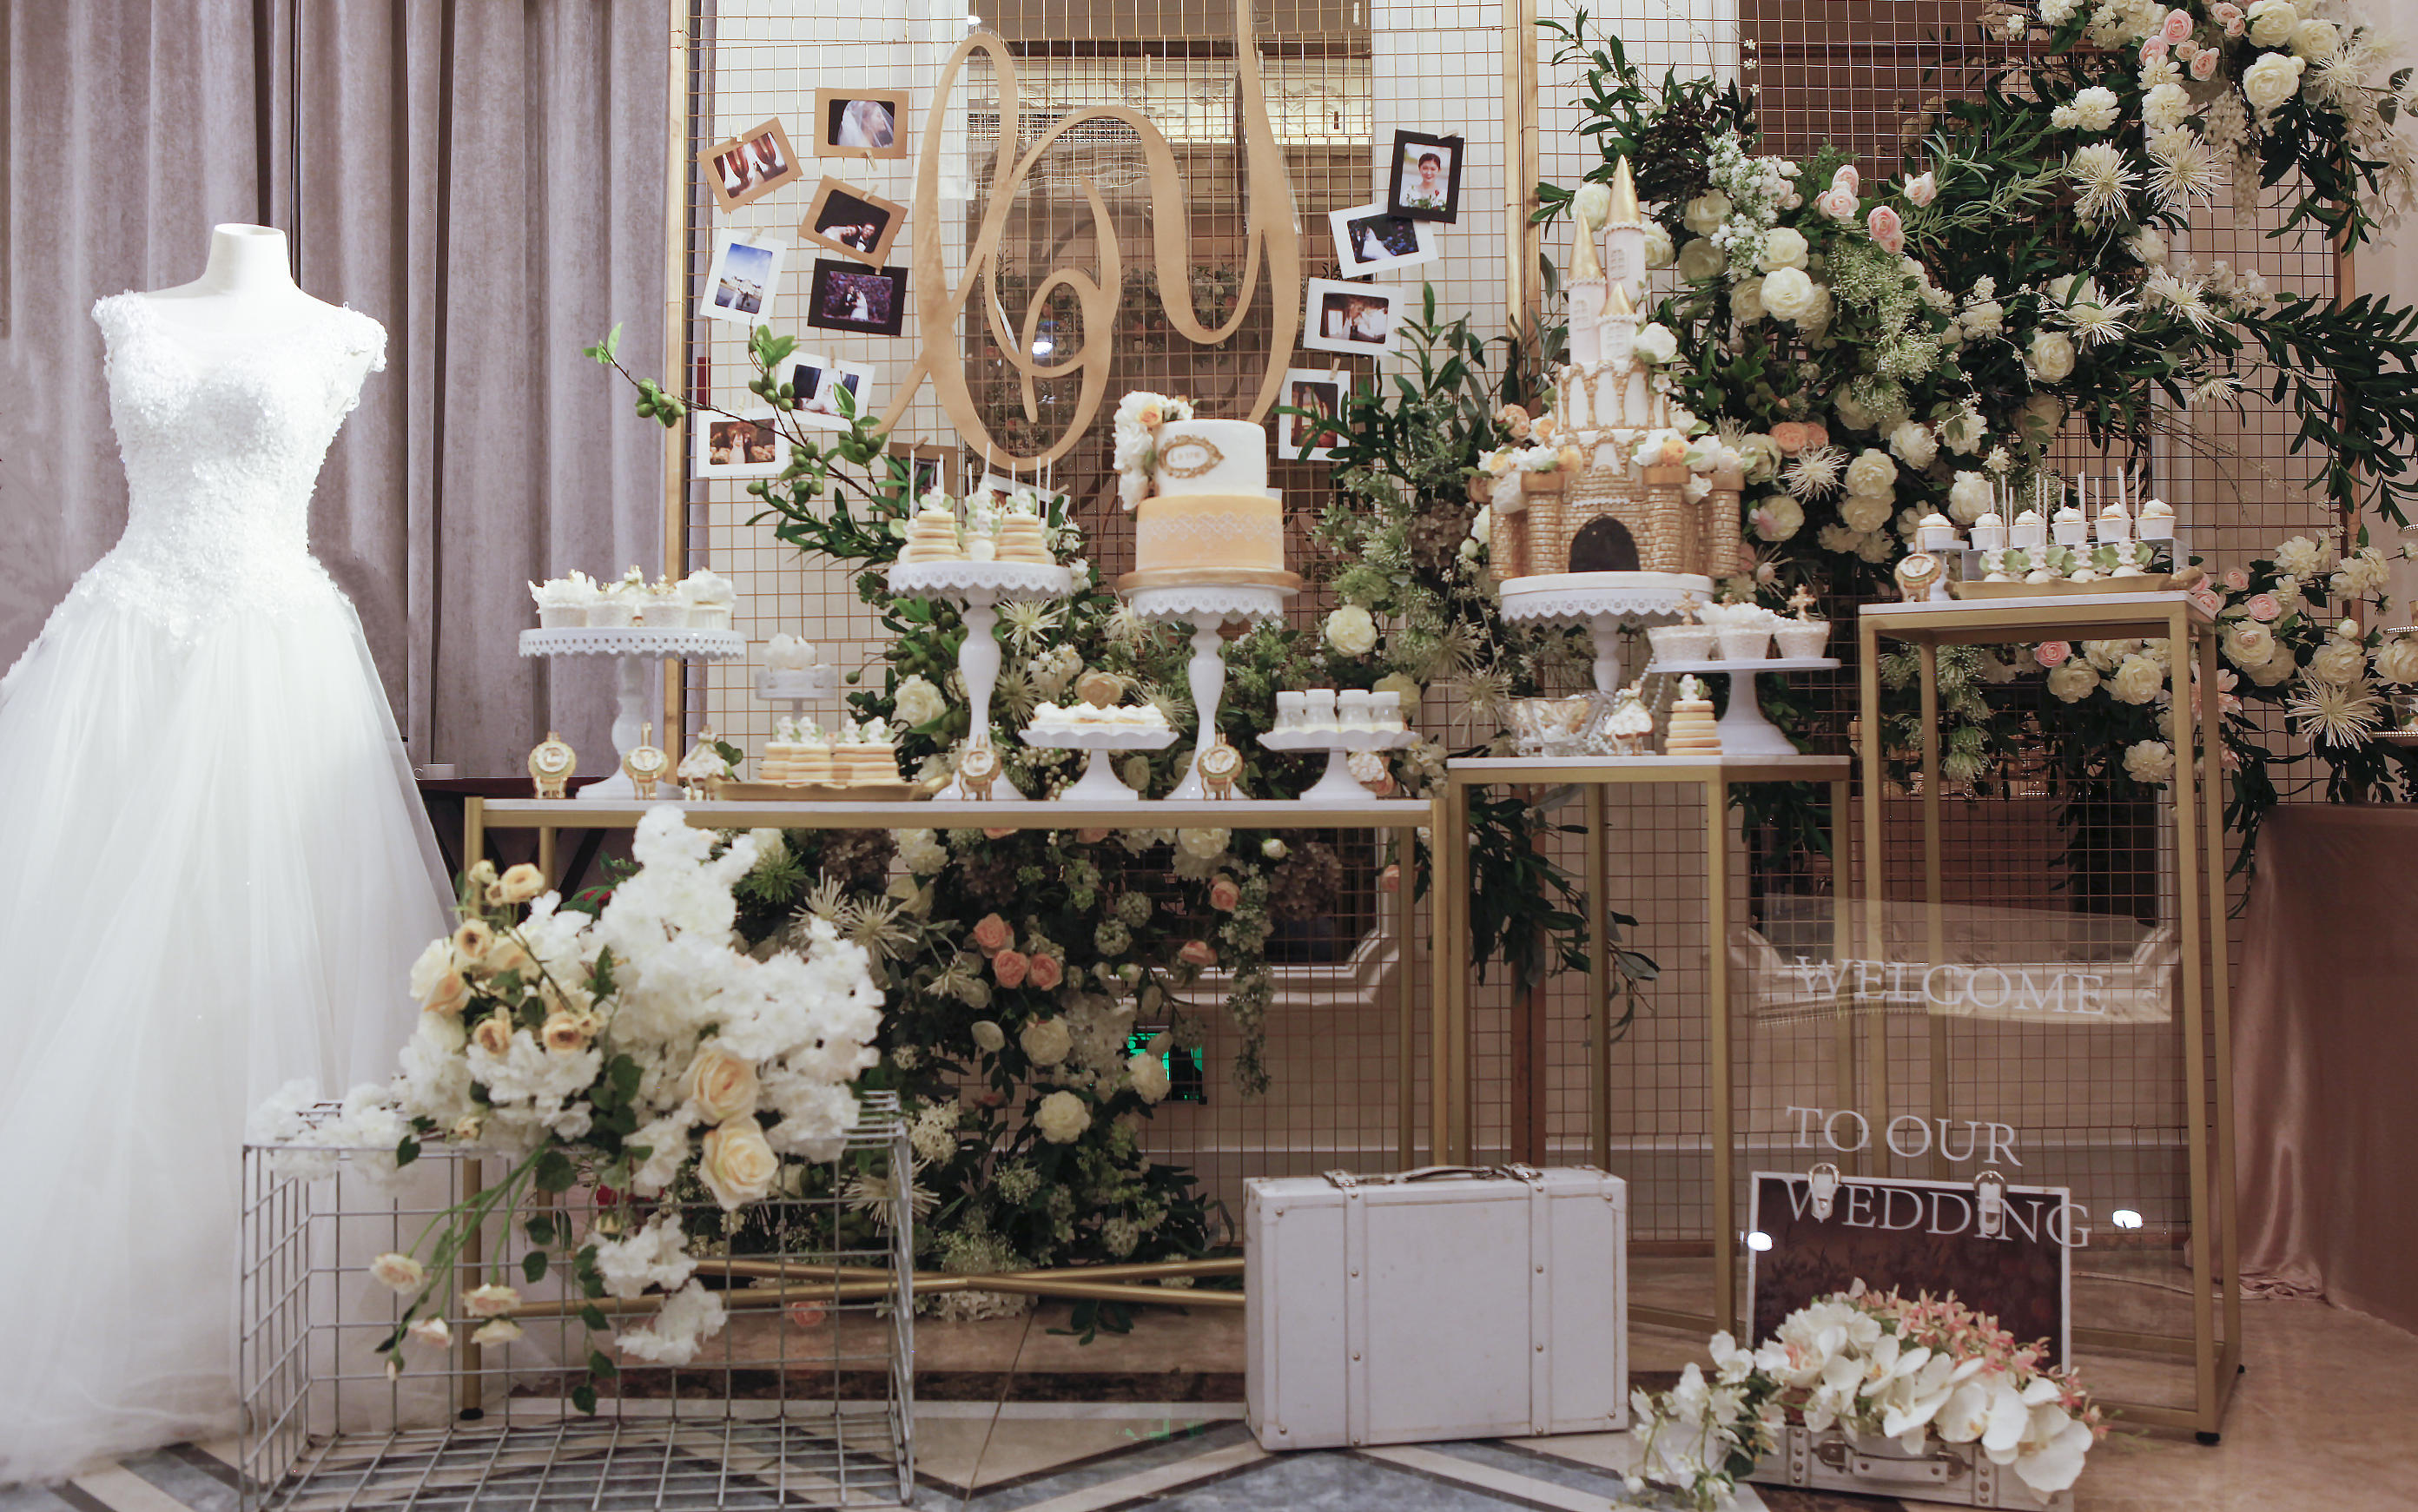 【晶品甜品台】“爱浇筑的城堡”主题婚礼蛋糕